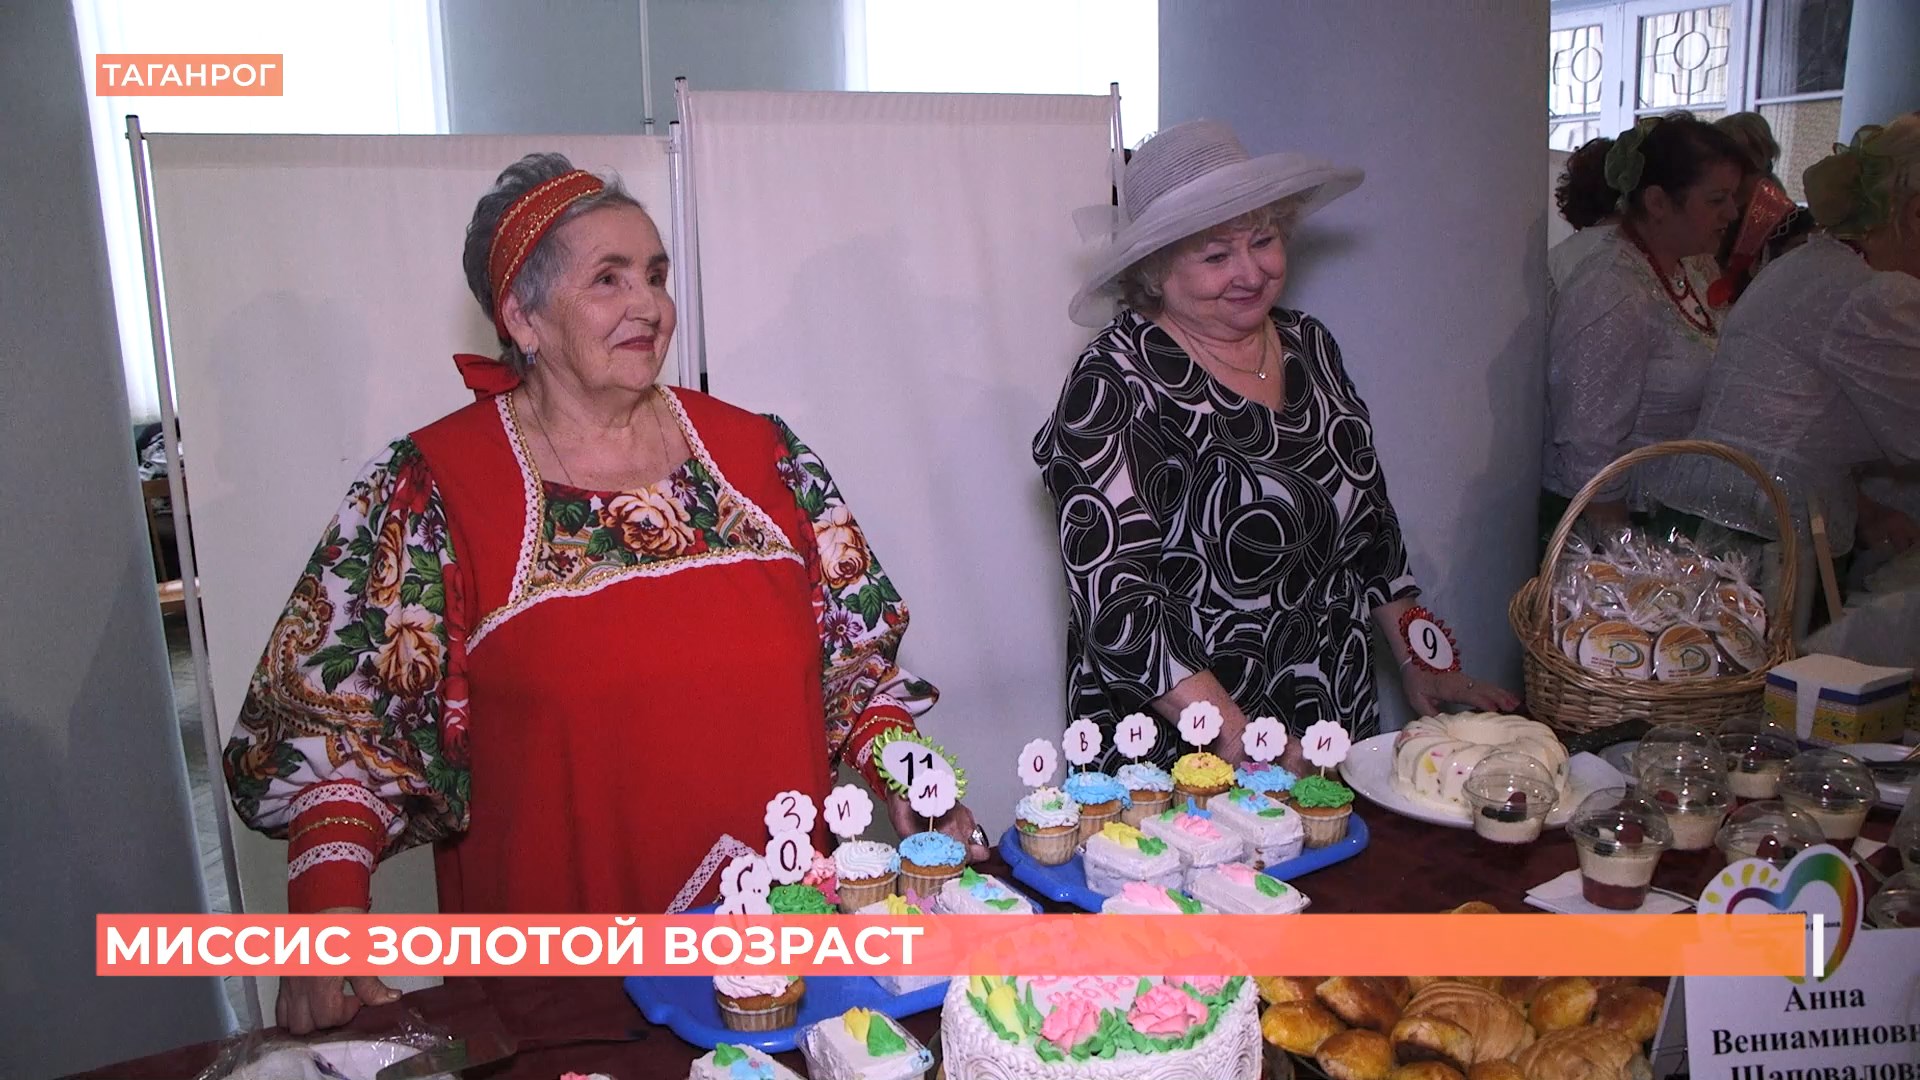 Миссис Золотой возраст выбрали в Таганроге на областном конкурсе